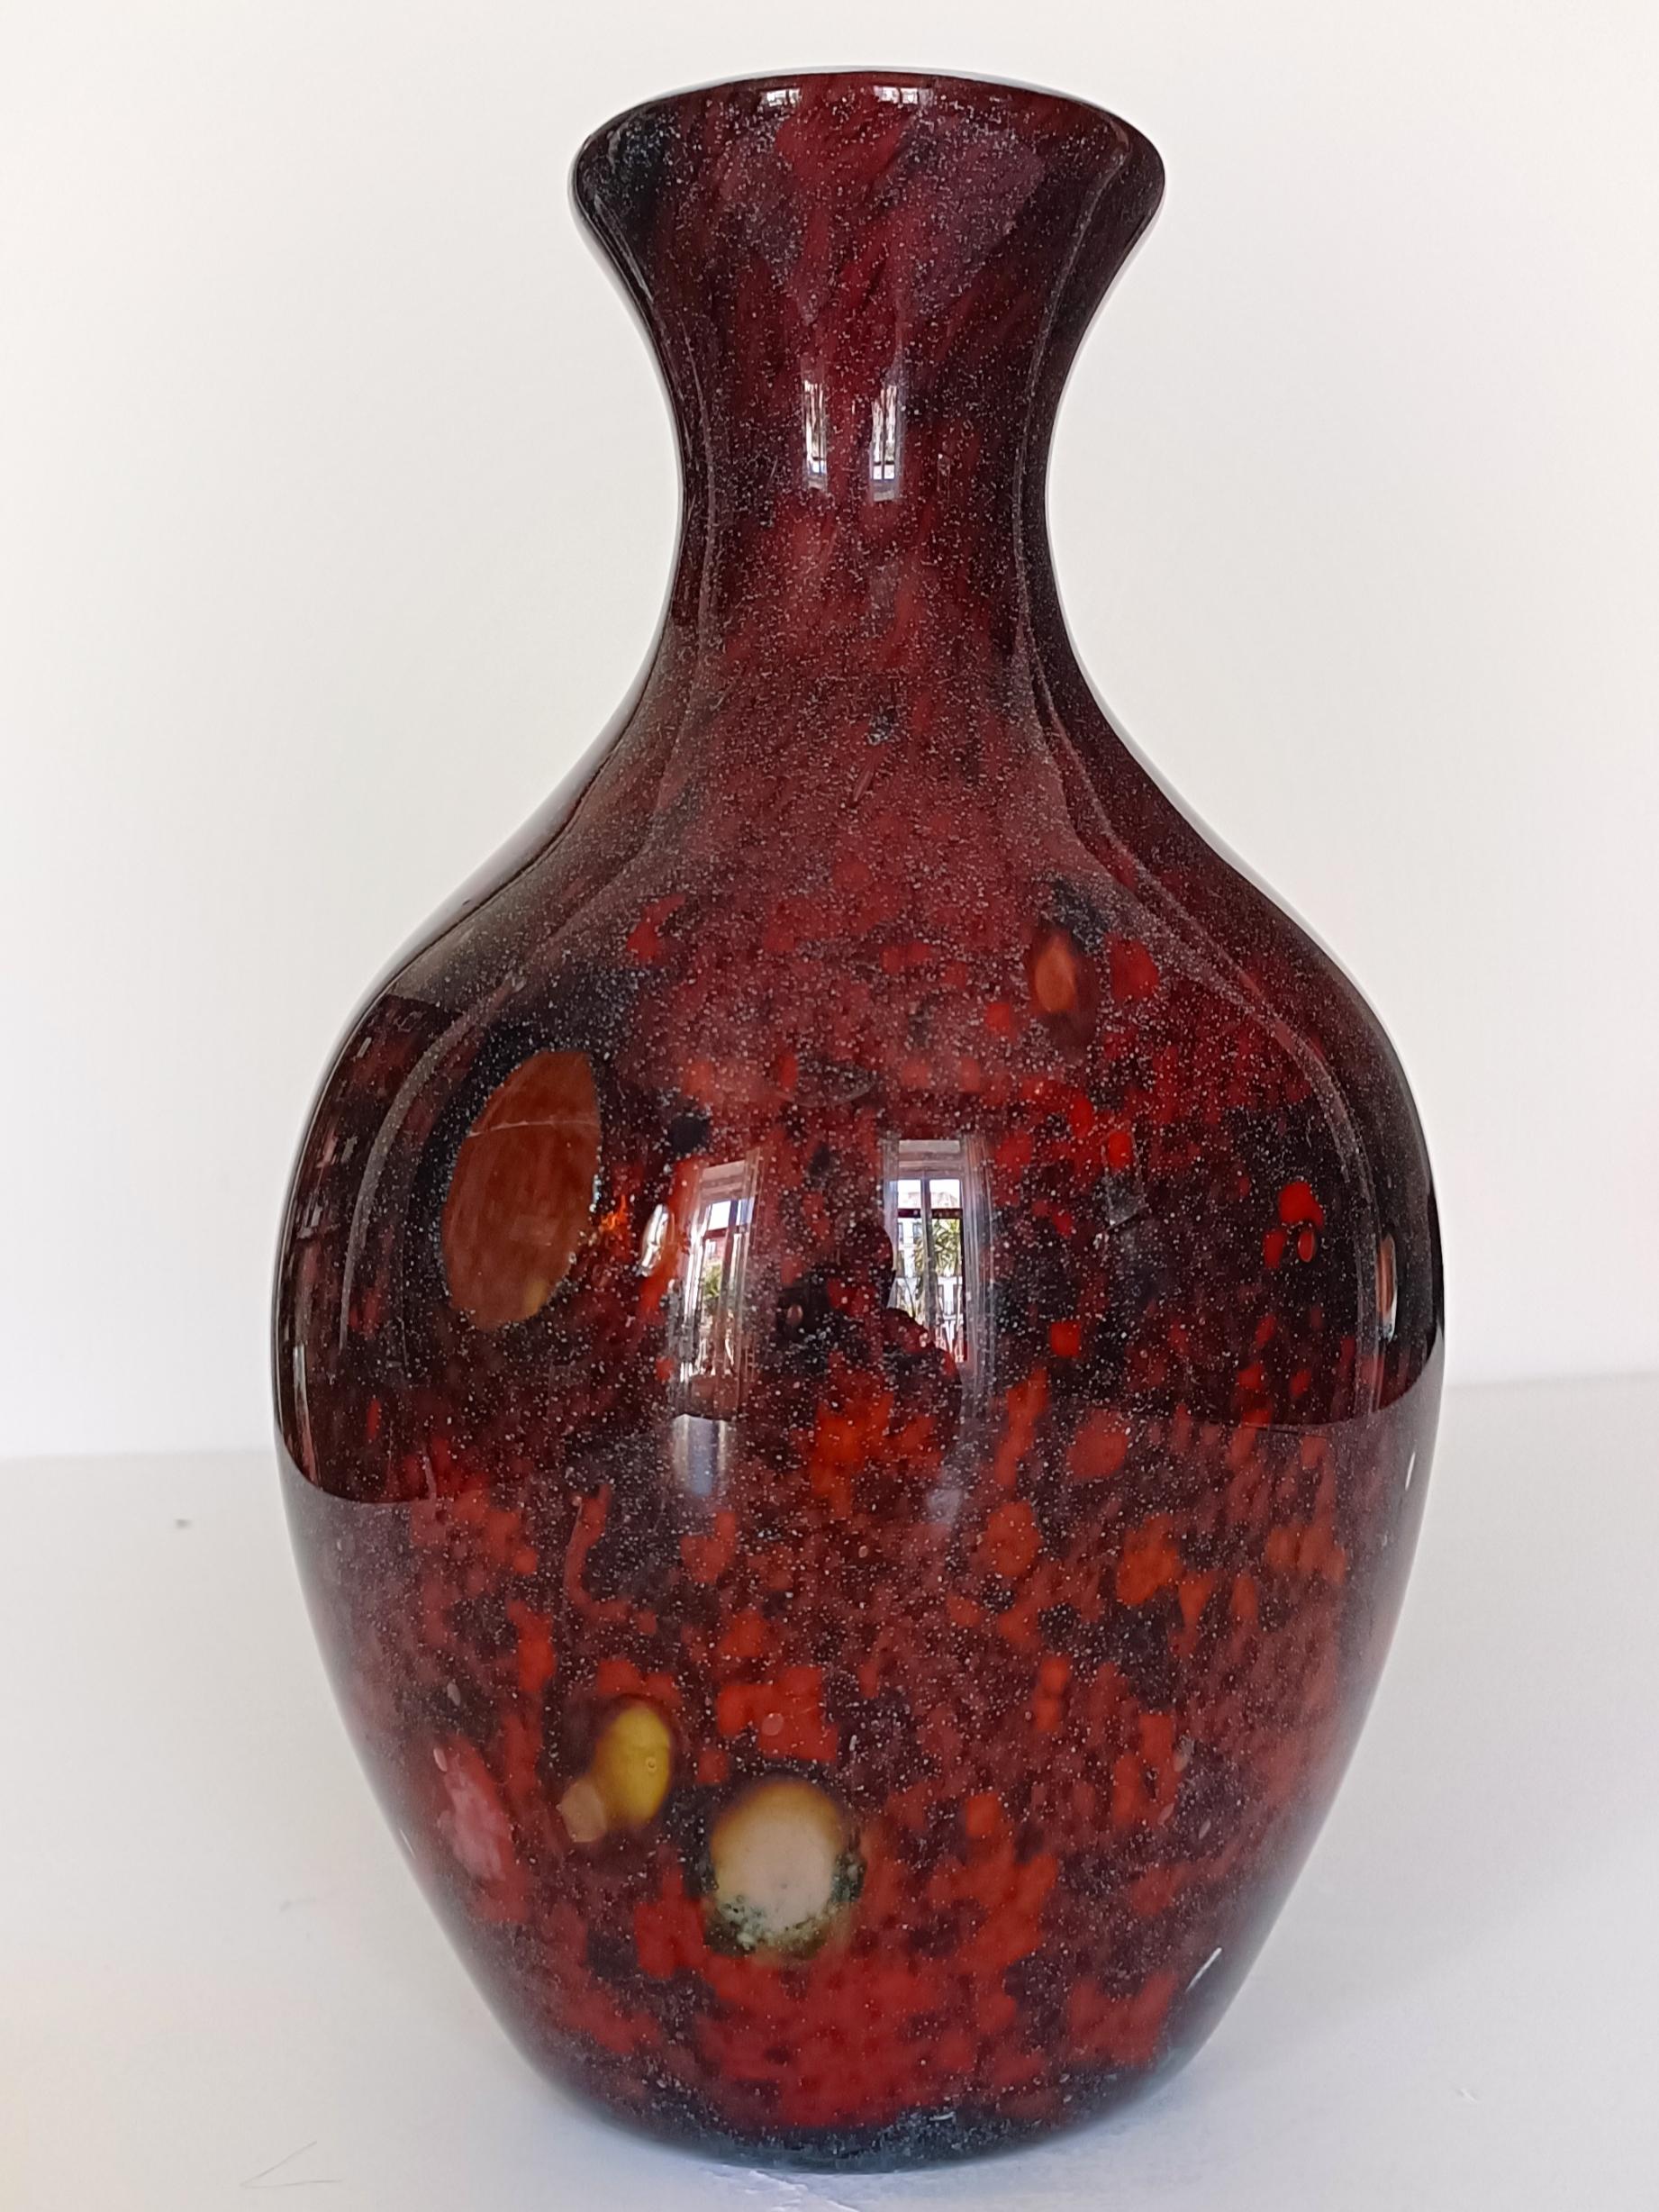 Lassen Sie sich von der zeitlosen Eleganz des modernen Murano-Glases der Jahrhundertmitte inspirieren - mit dieser exquisiten mundgeblasenen Vase, die Kunstfertigkeit und Handwerkskunst in sich vereint. 

Dieses außergewöhnlich schöne Stück zeichnet